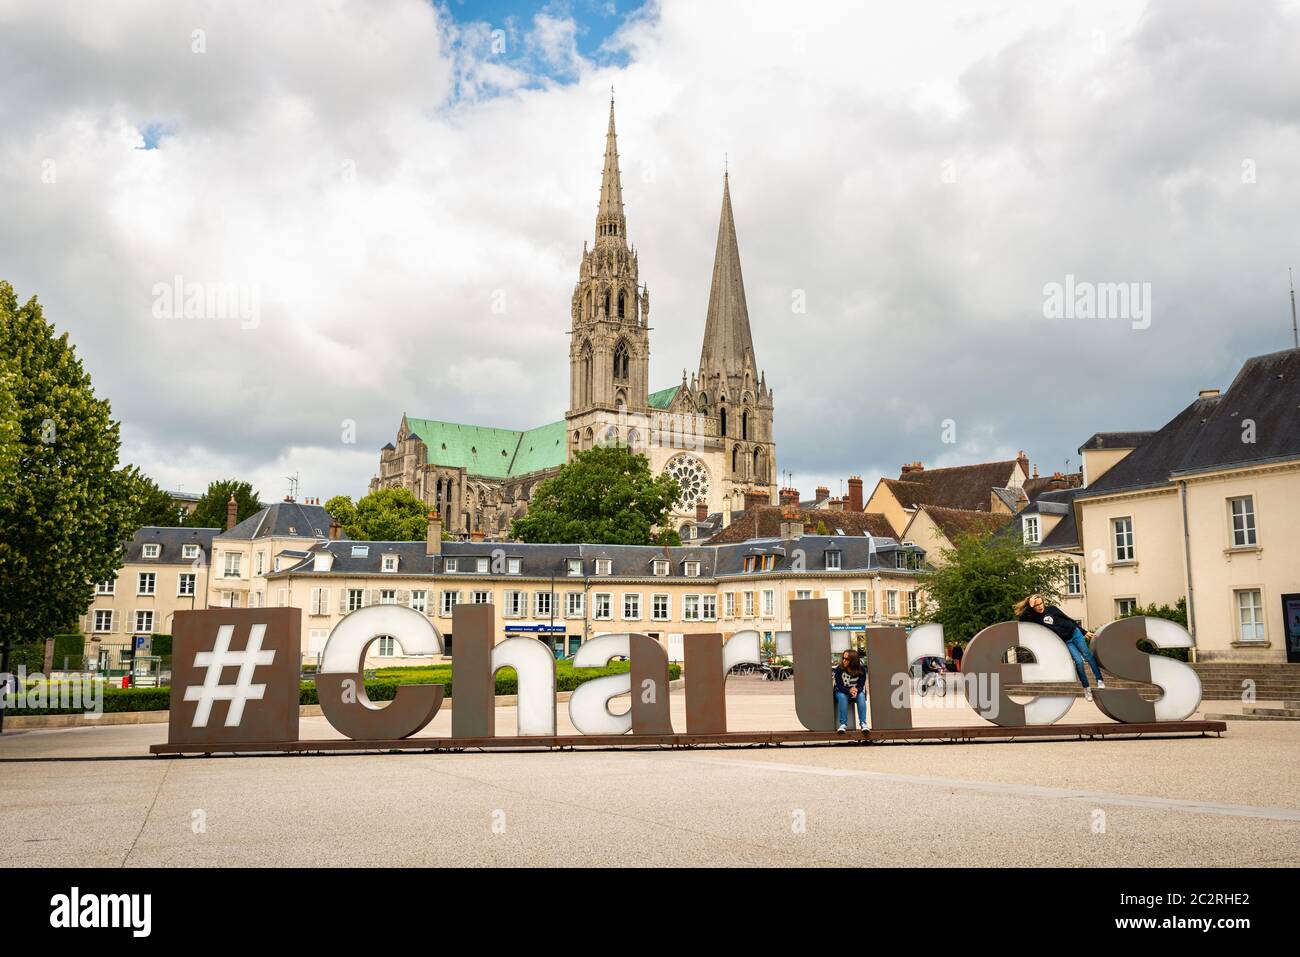 Hashtag Chartres et la Cathédrale de Chartres, France Banque D'Images